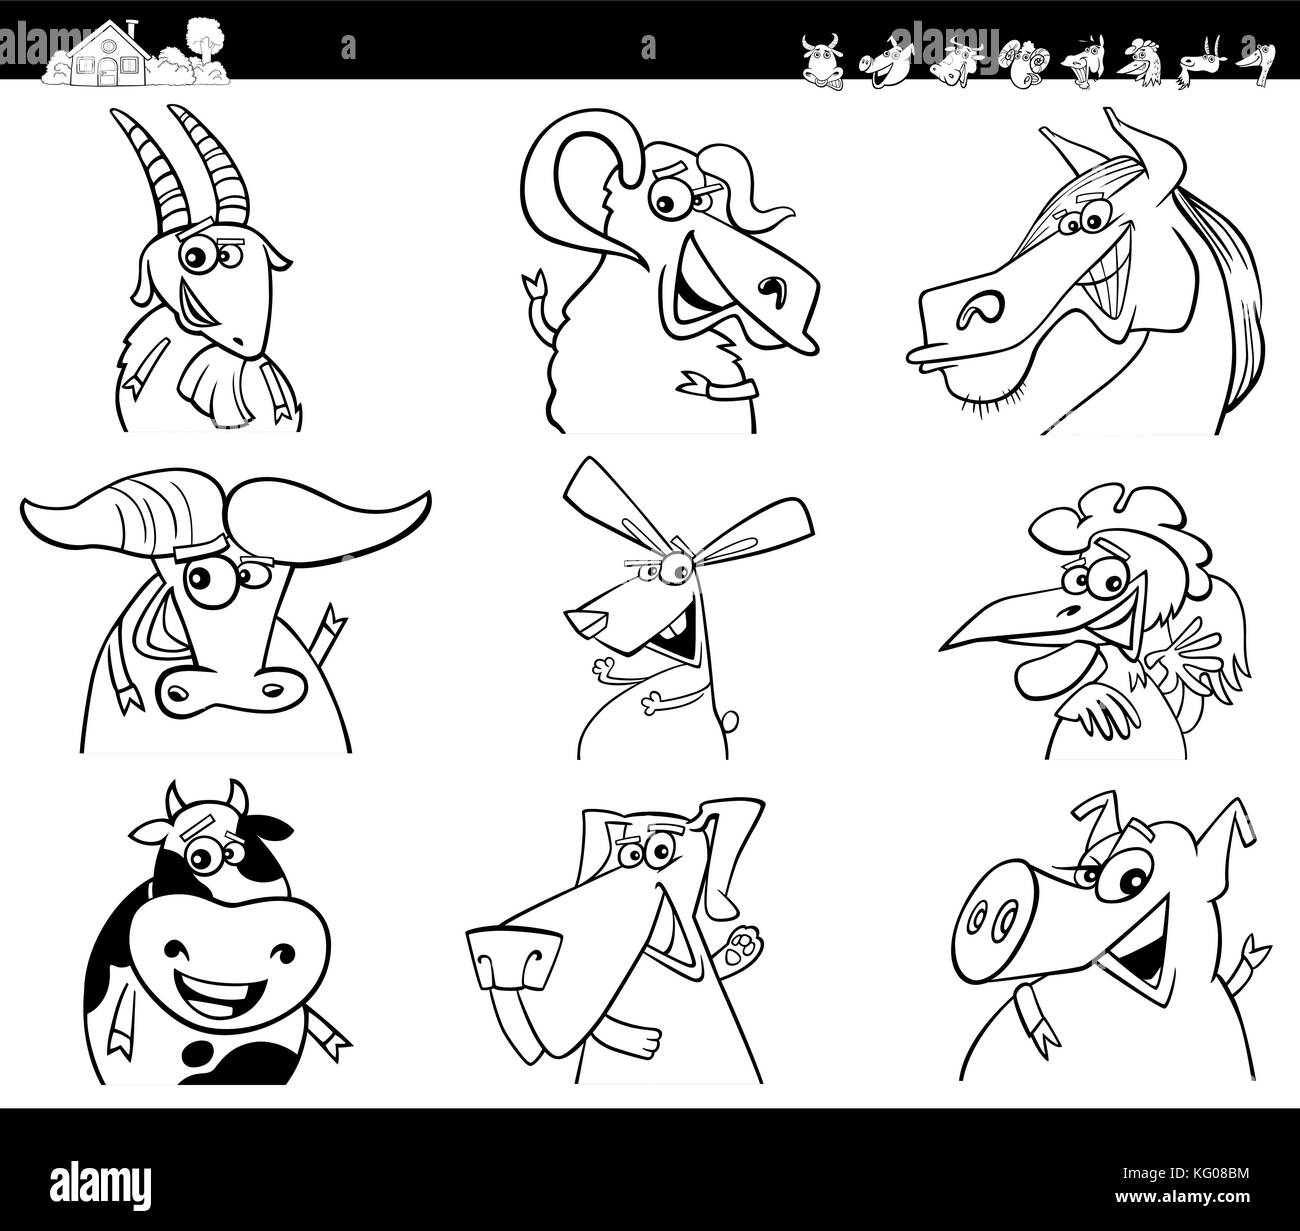 Cartoon noir et blanc illustration de funny farm animal livre à colorier Jeu de caractères Illustration de Vecteur